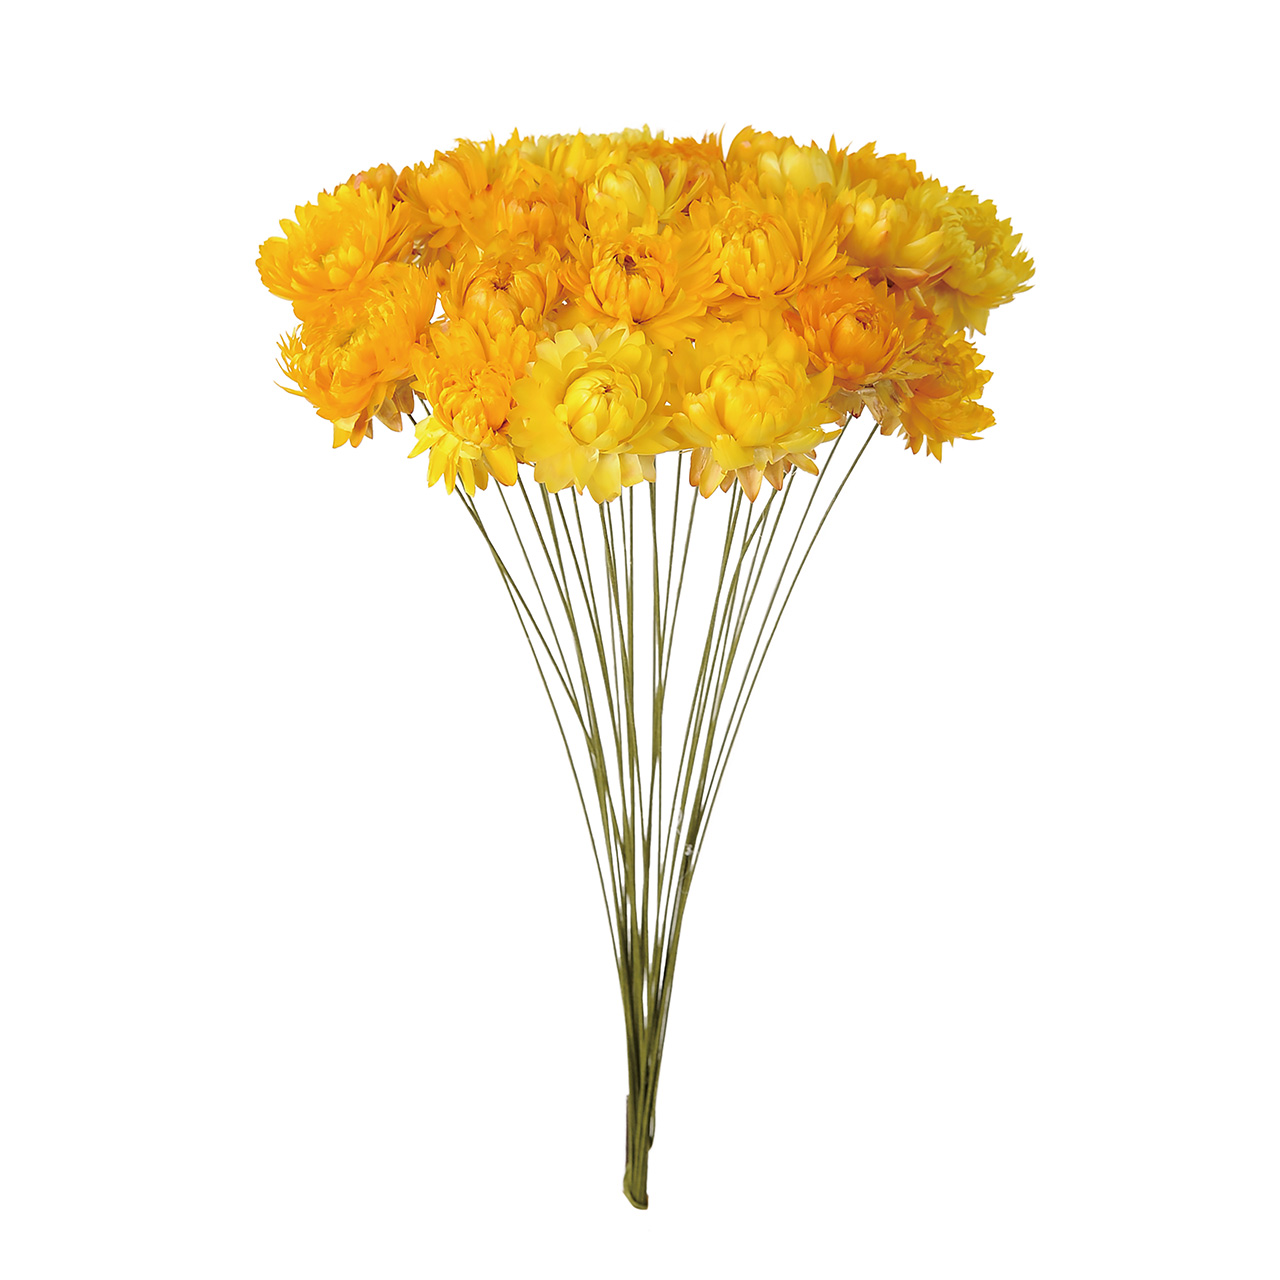 マイフラ 通販 風の花 へリクリサムワイヤー付き イエロー ドライフラワー Dn 004 ナチュラル イエロー ドライフラワー ナチュラル素材 全国にmagiq 花器 花資材などをお届けします